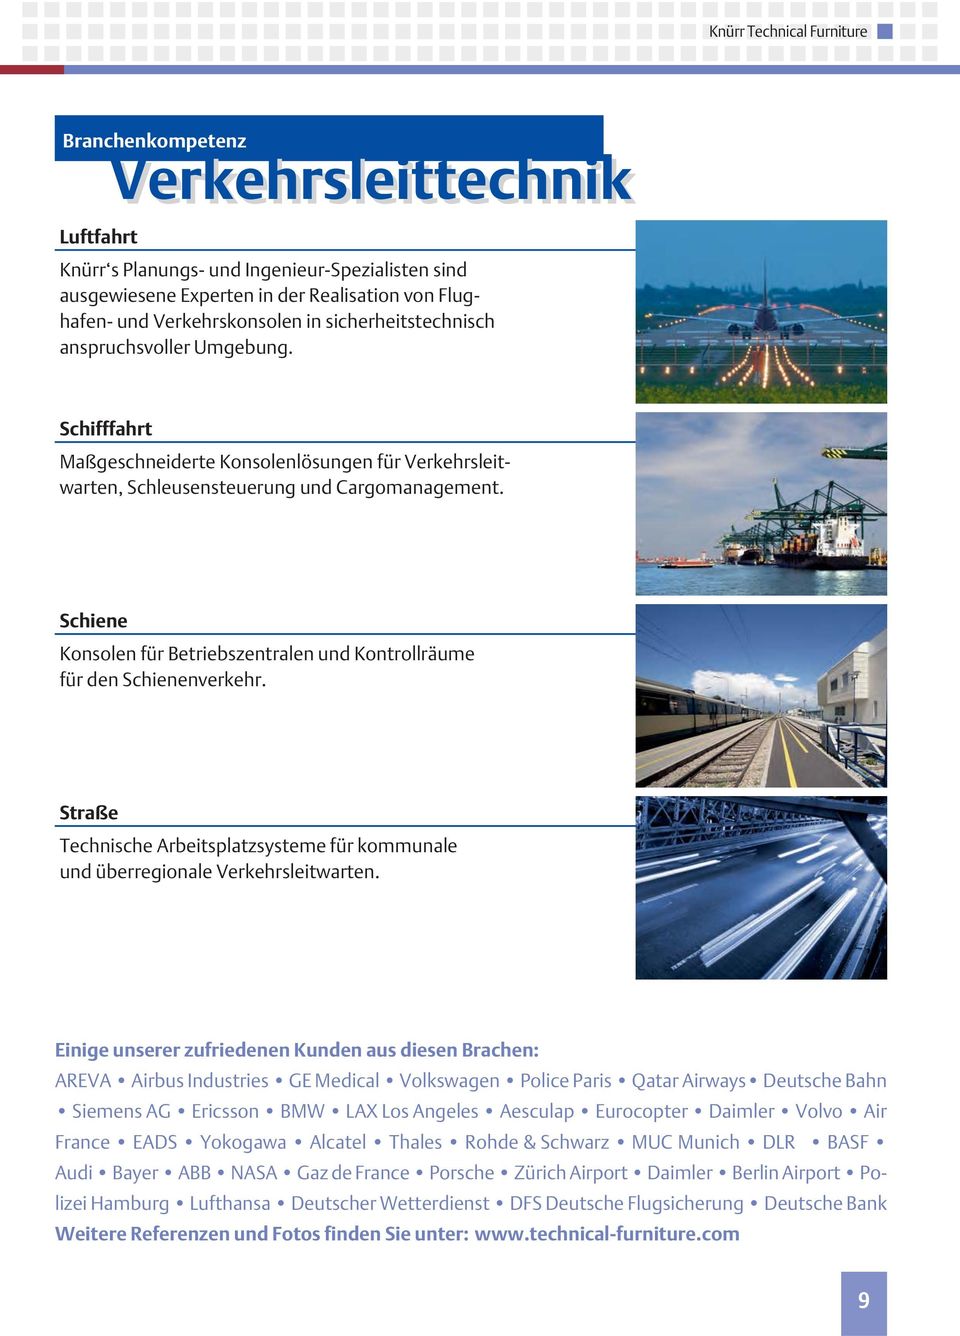 Schiene Konsolen für Betriebszentralen und Kontrollräume für den Schienenverkehr. Straße Technische Arbeitsplatzsysteme für kommunale und überregionale Verkehrsleitwarten.